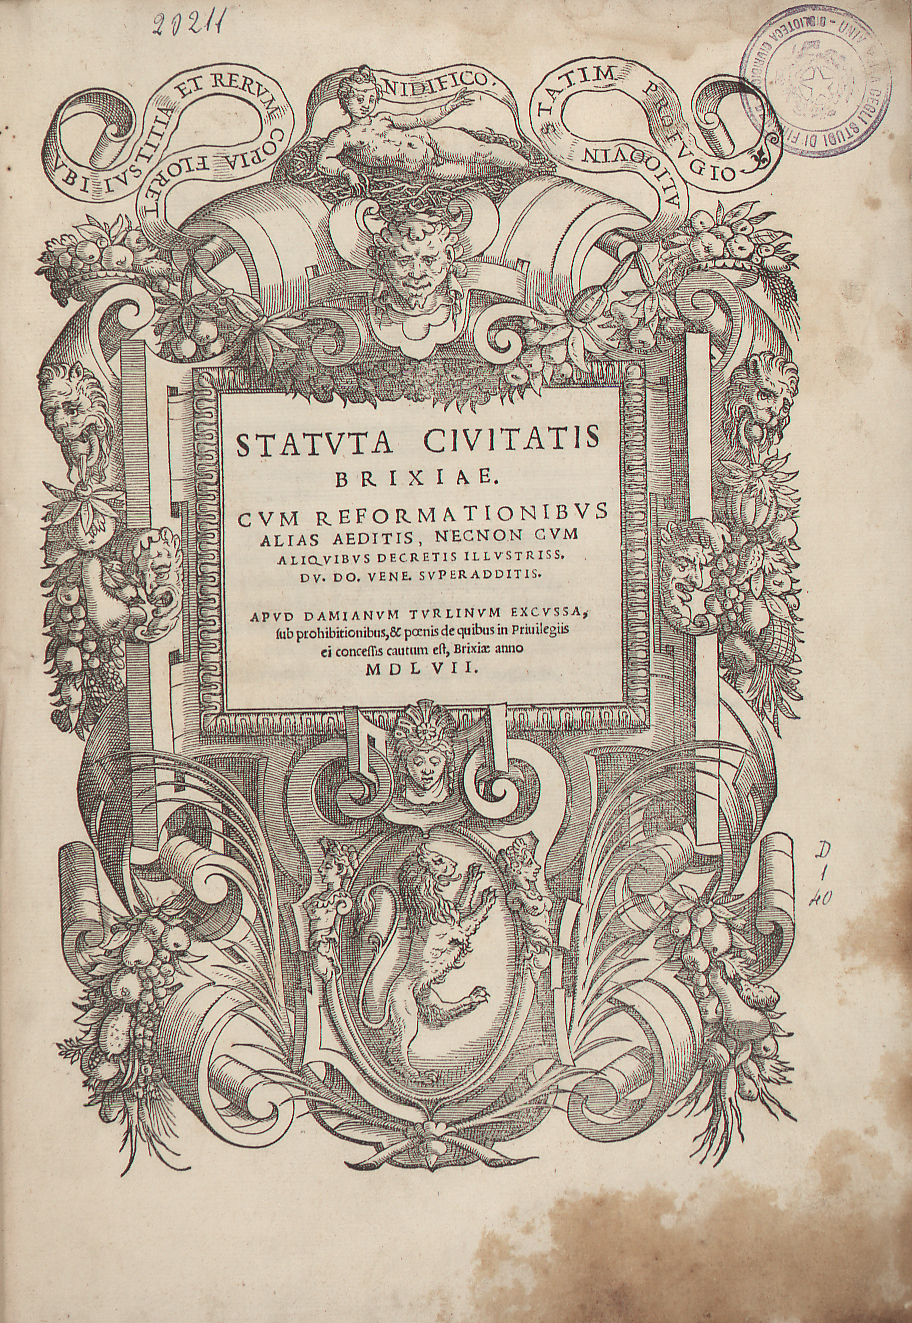 Statuta civitatis Brixiae